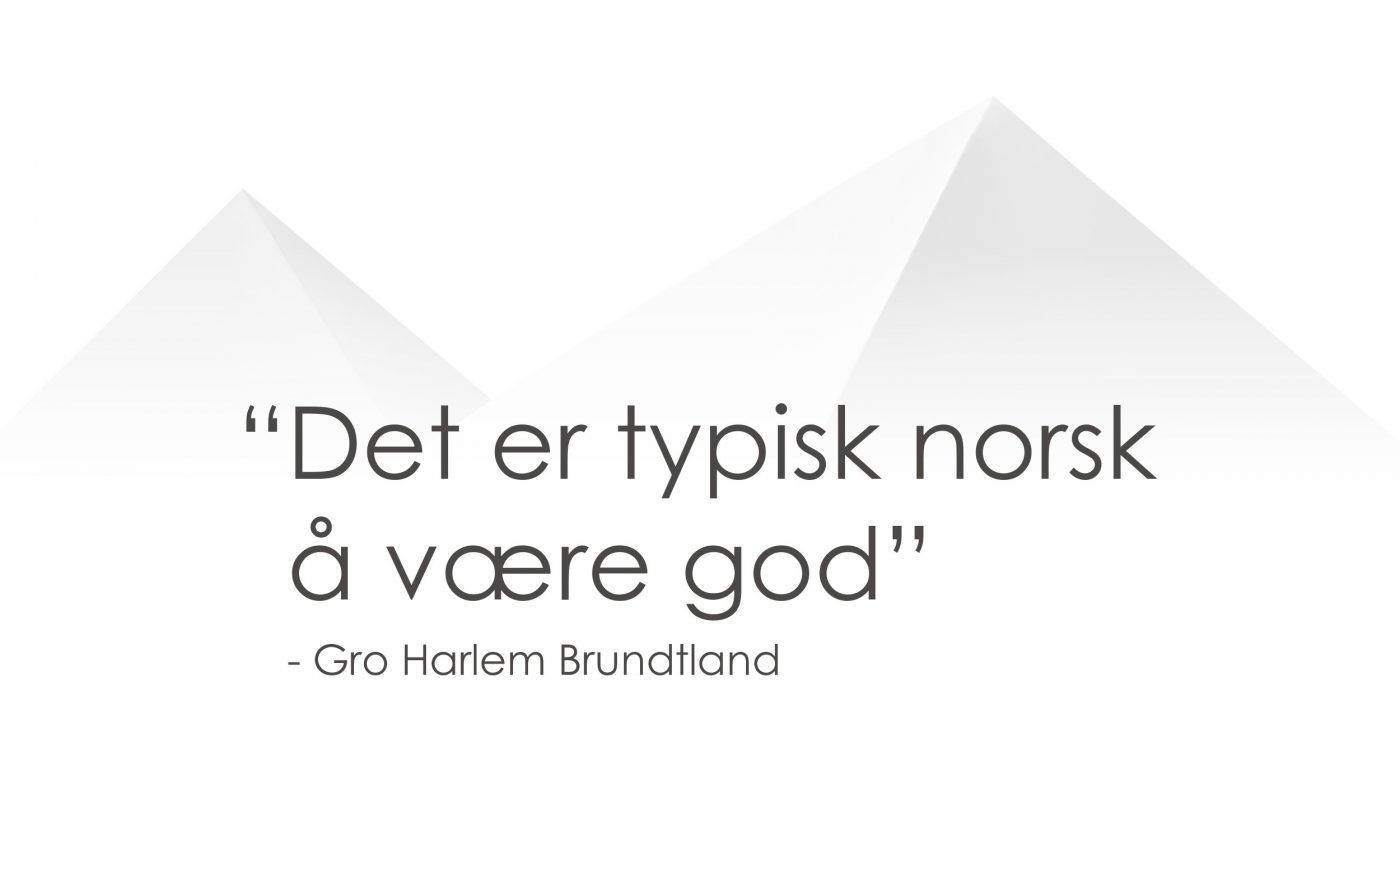 Det er typisk Norsk å være god - Gro harlem Brundtland. Mr.Gripy, HappyNorwegian